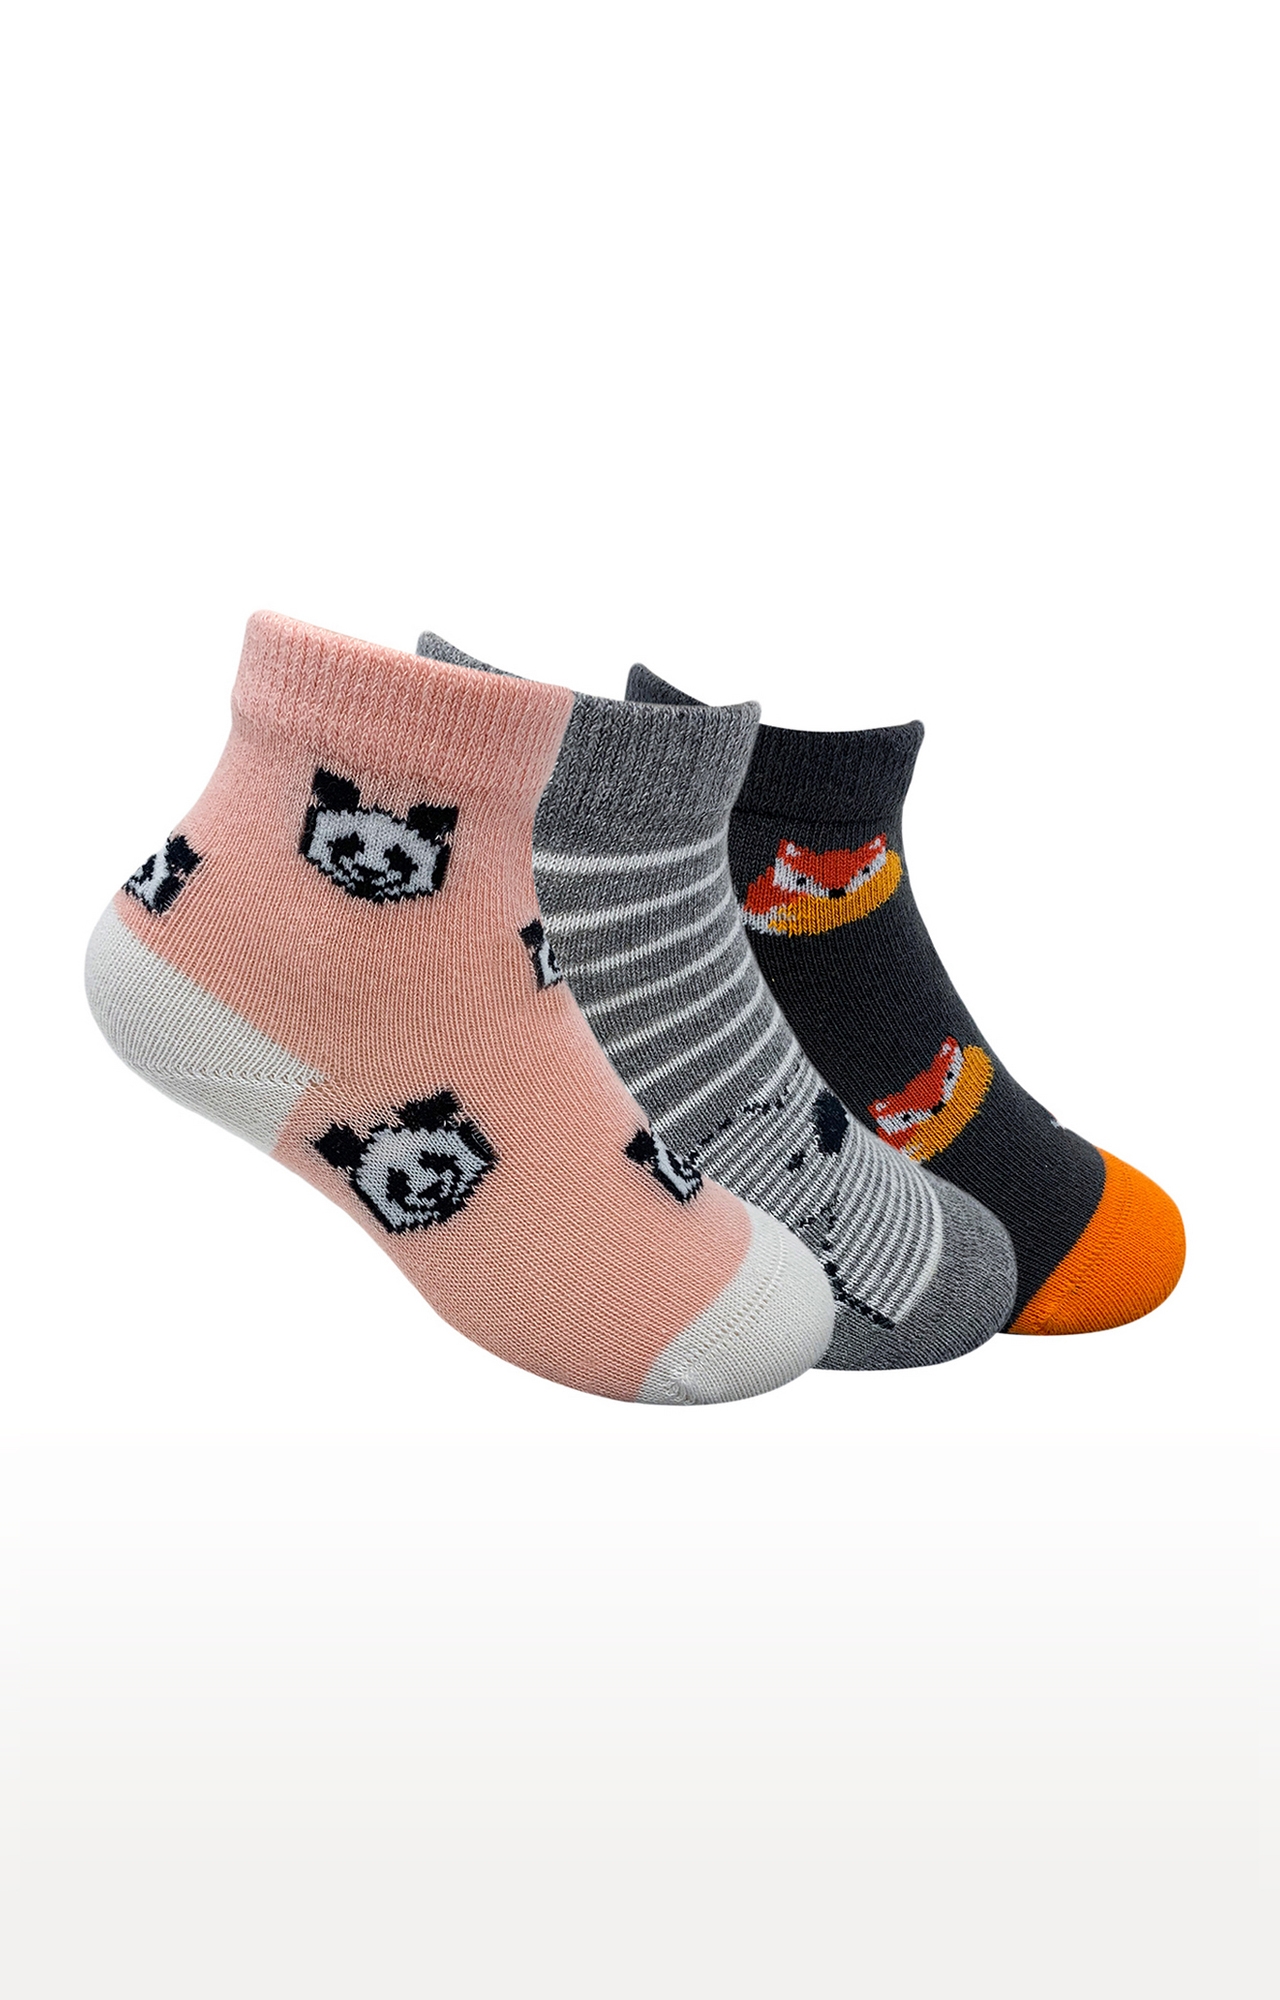 Mint & Oak | Mint & Oak Animal Cuteness Cotton Multi Ankle Length Socks for Kids - Pack of 3